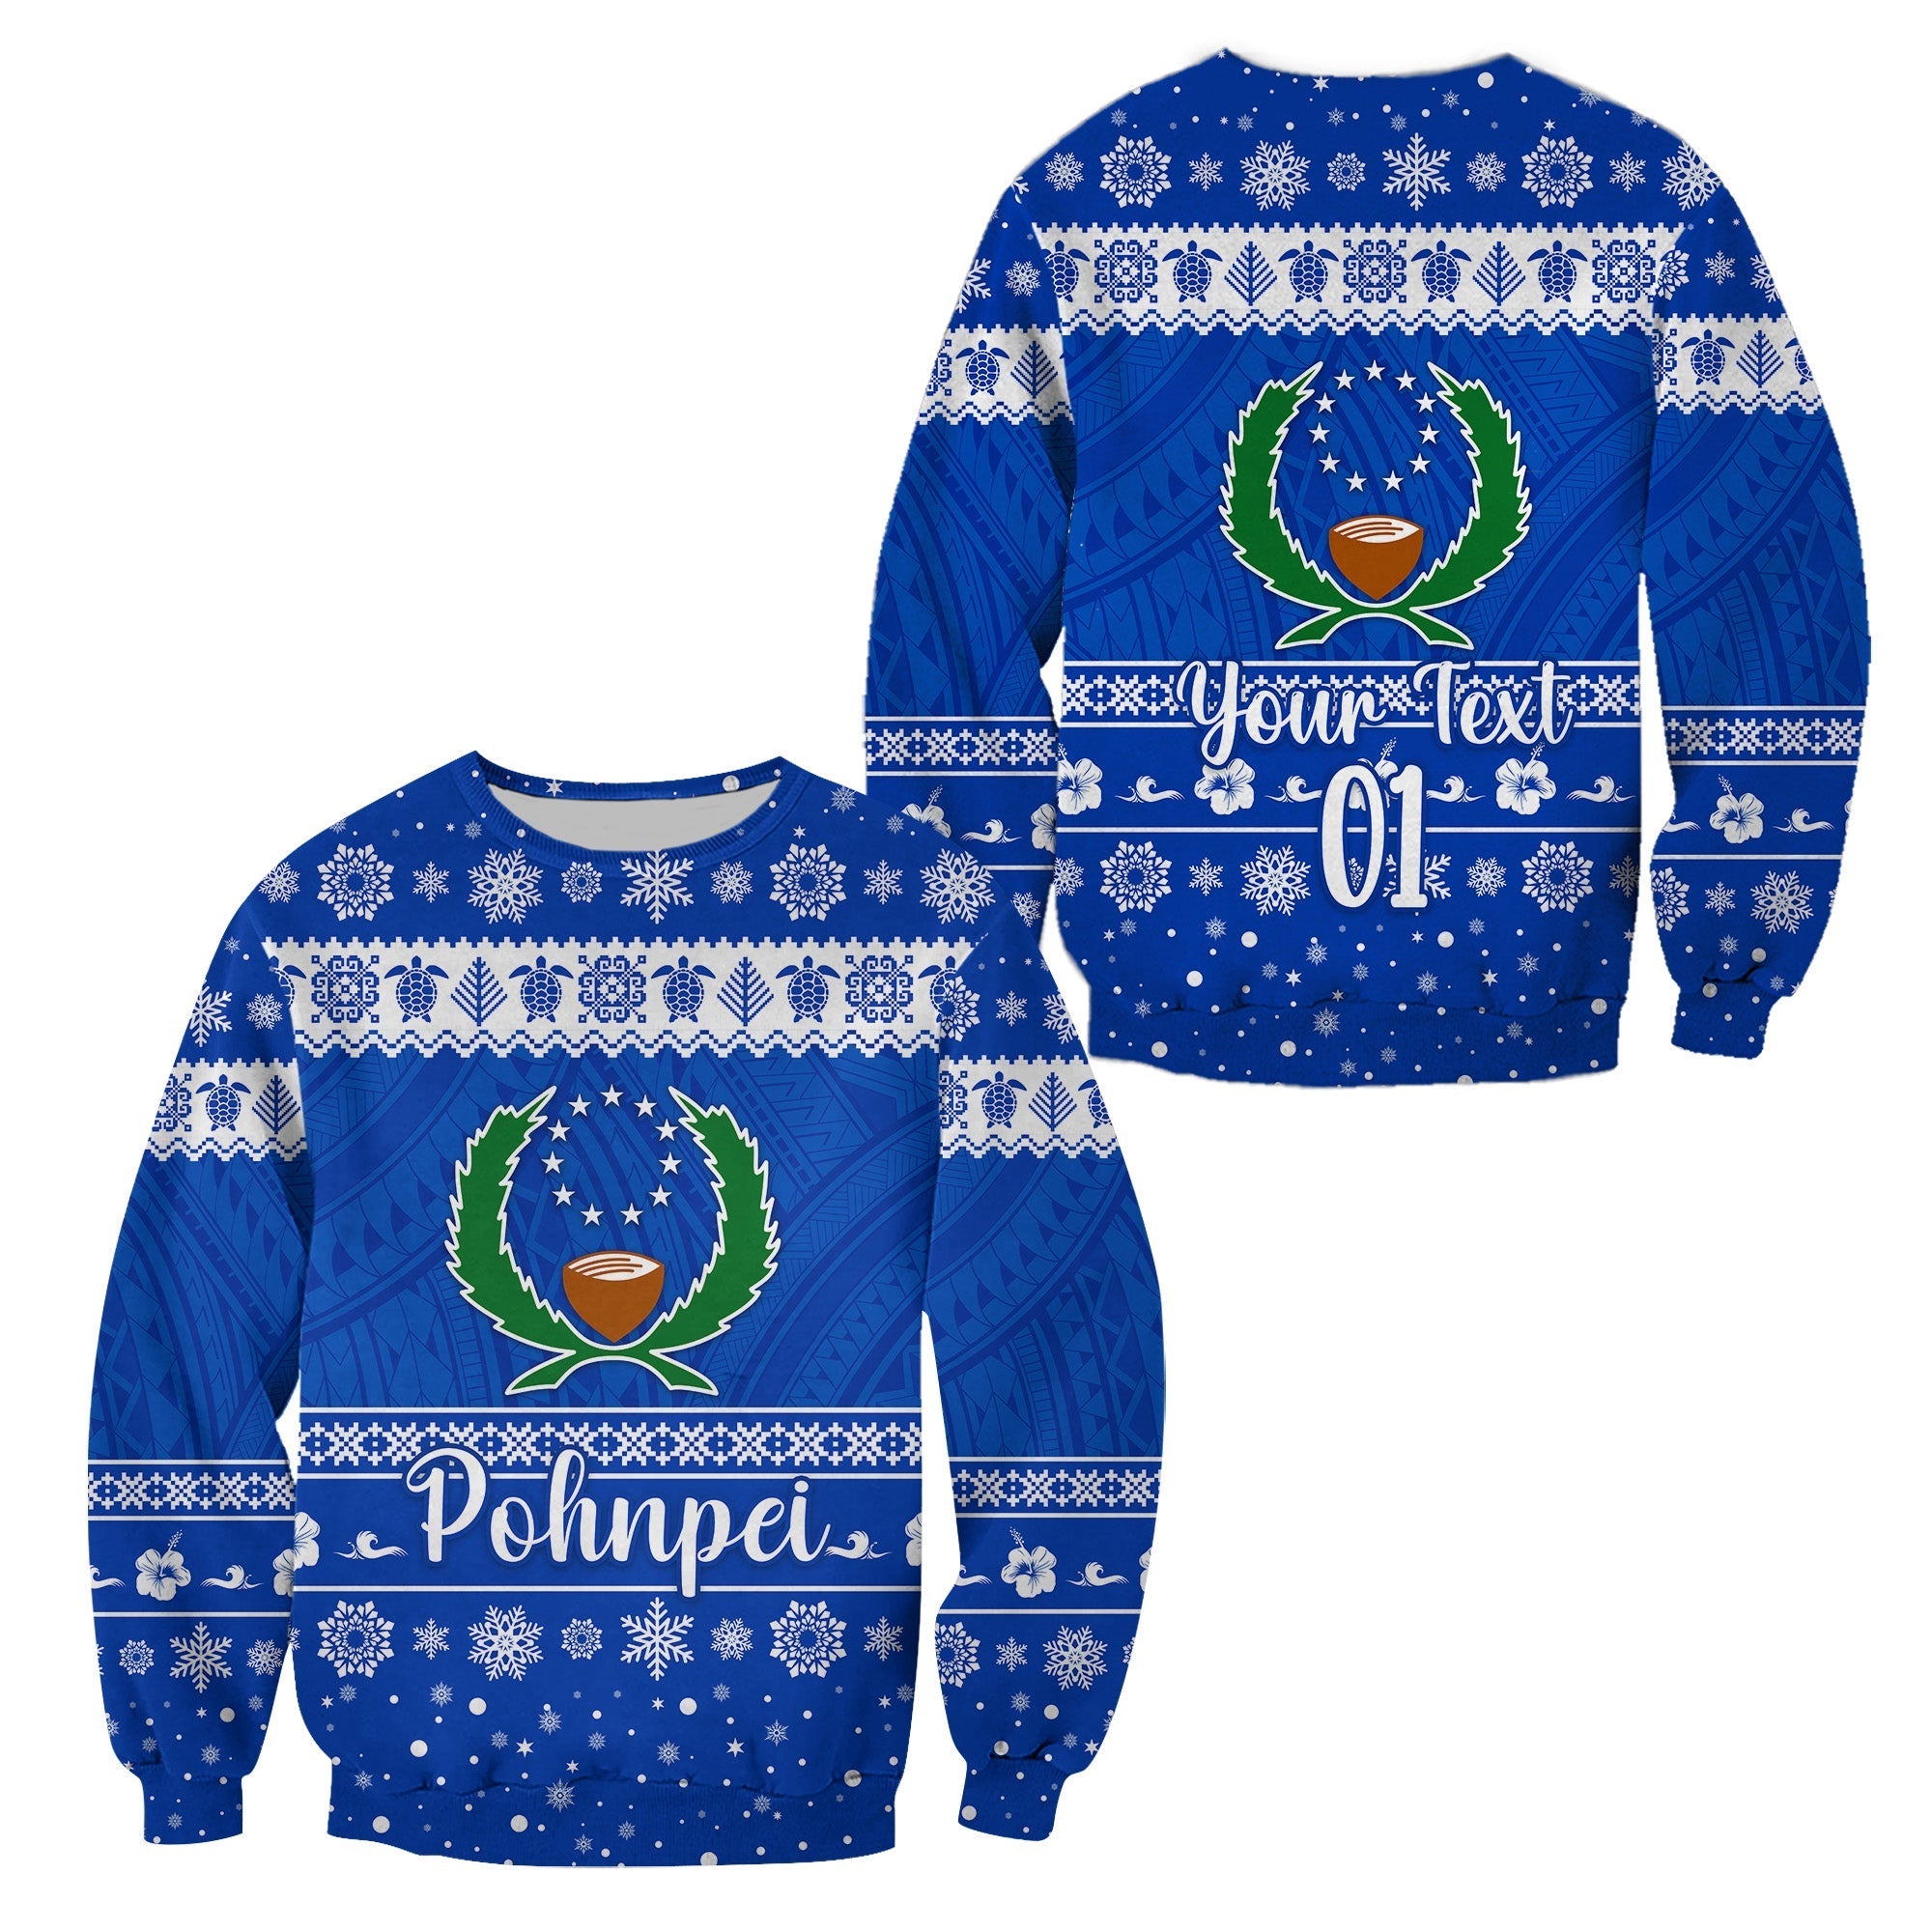 custom-personalised-fsm-pohnpei-christmas-sweatshirt-simple-style